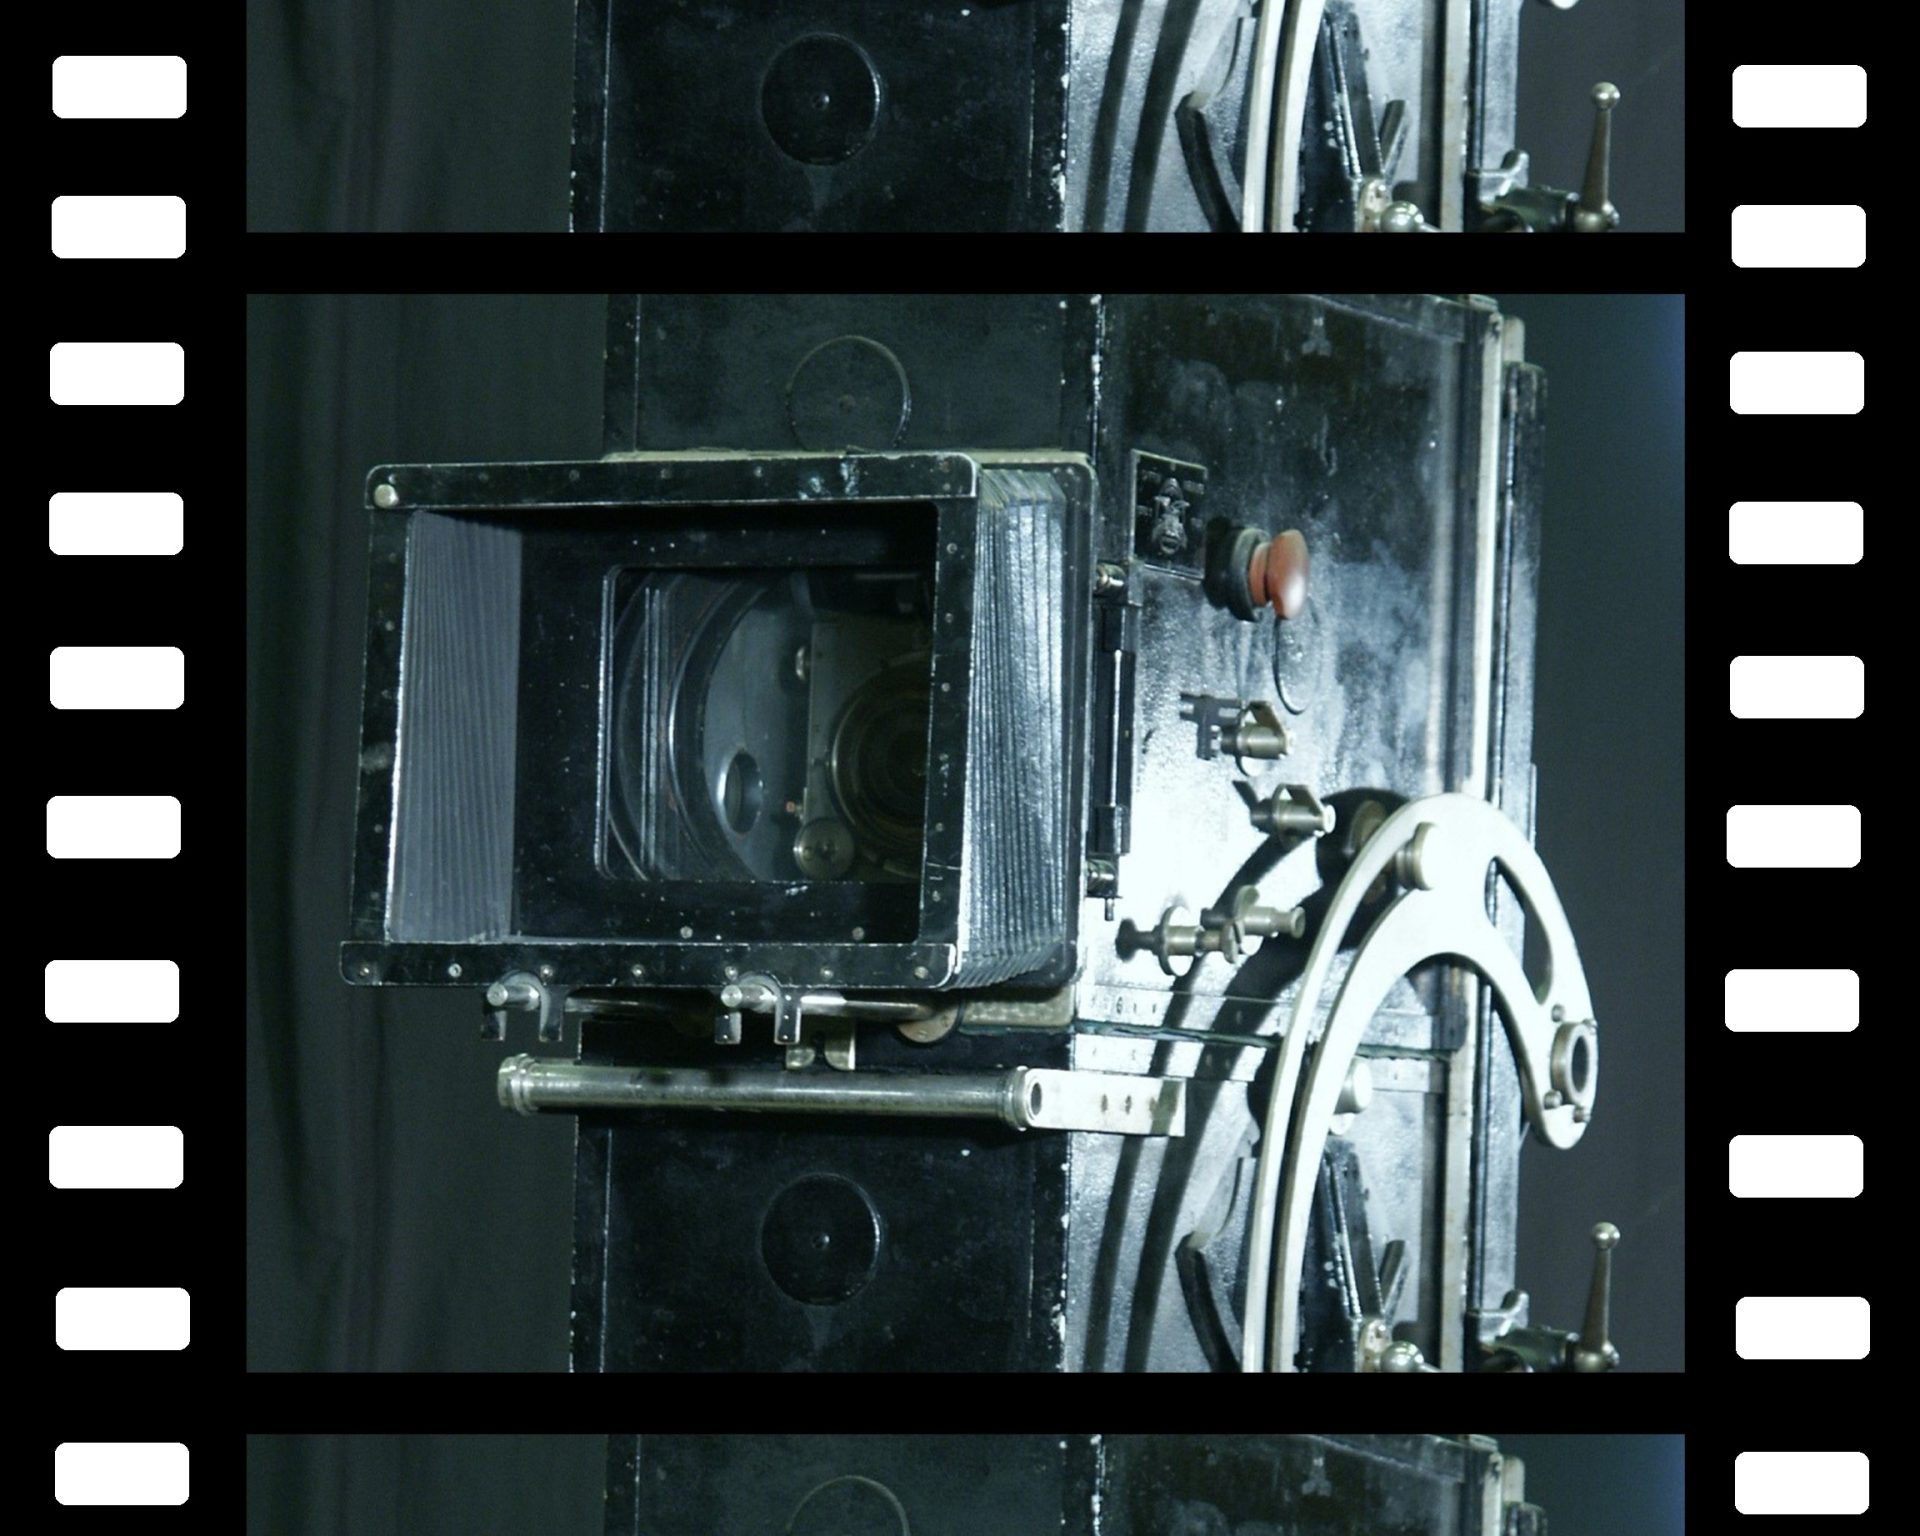 En gammaldags filmkamera i svartvitt